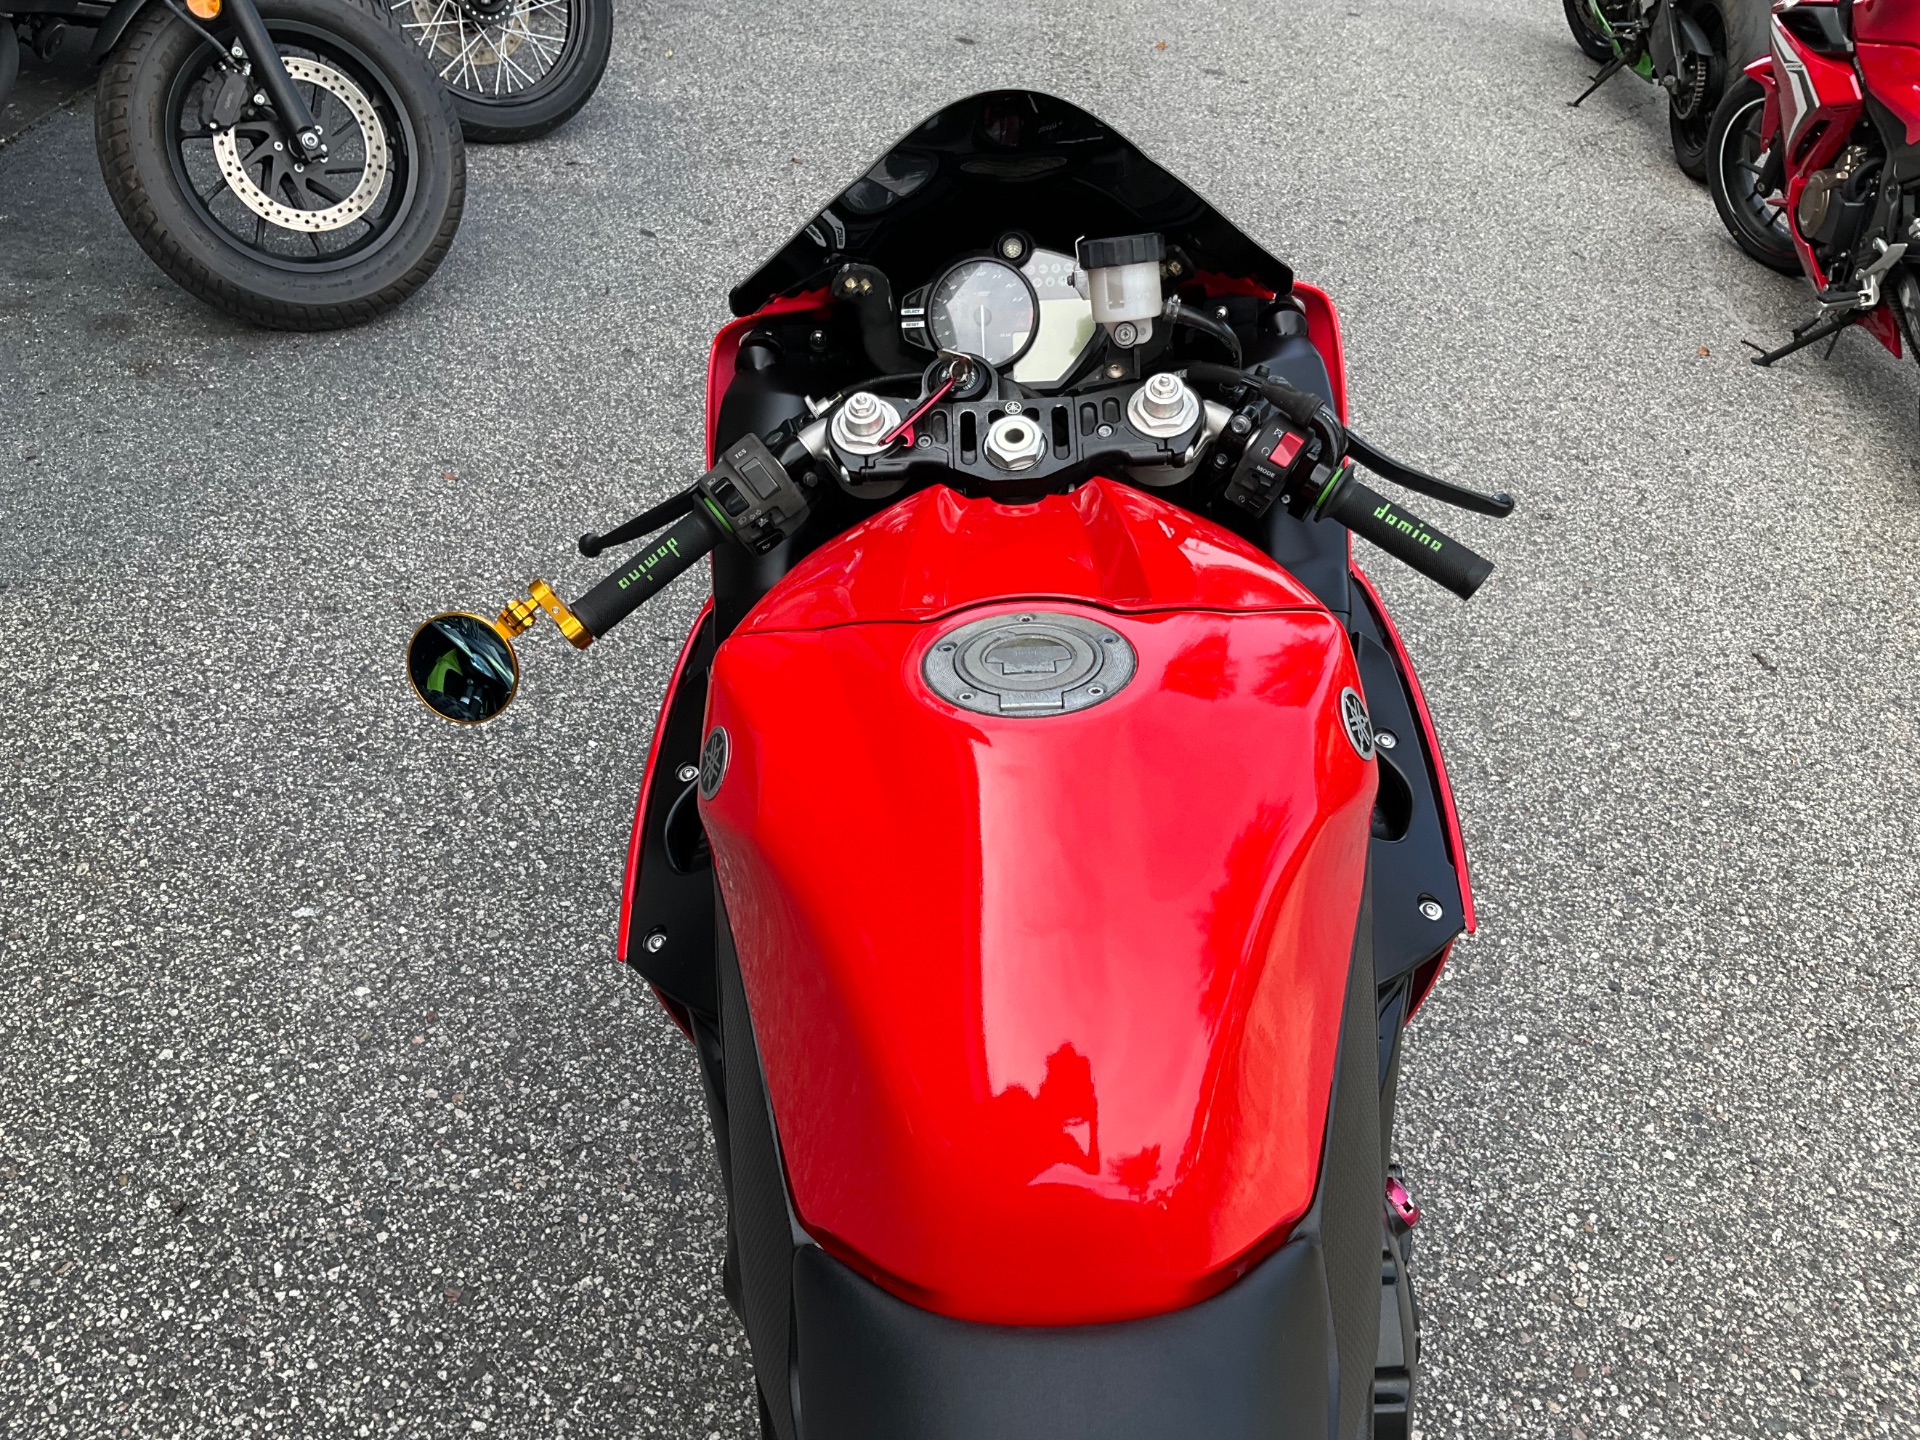 2014 Yamaha YZF-R1 in Sanford, Florida - Photo 23